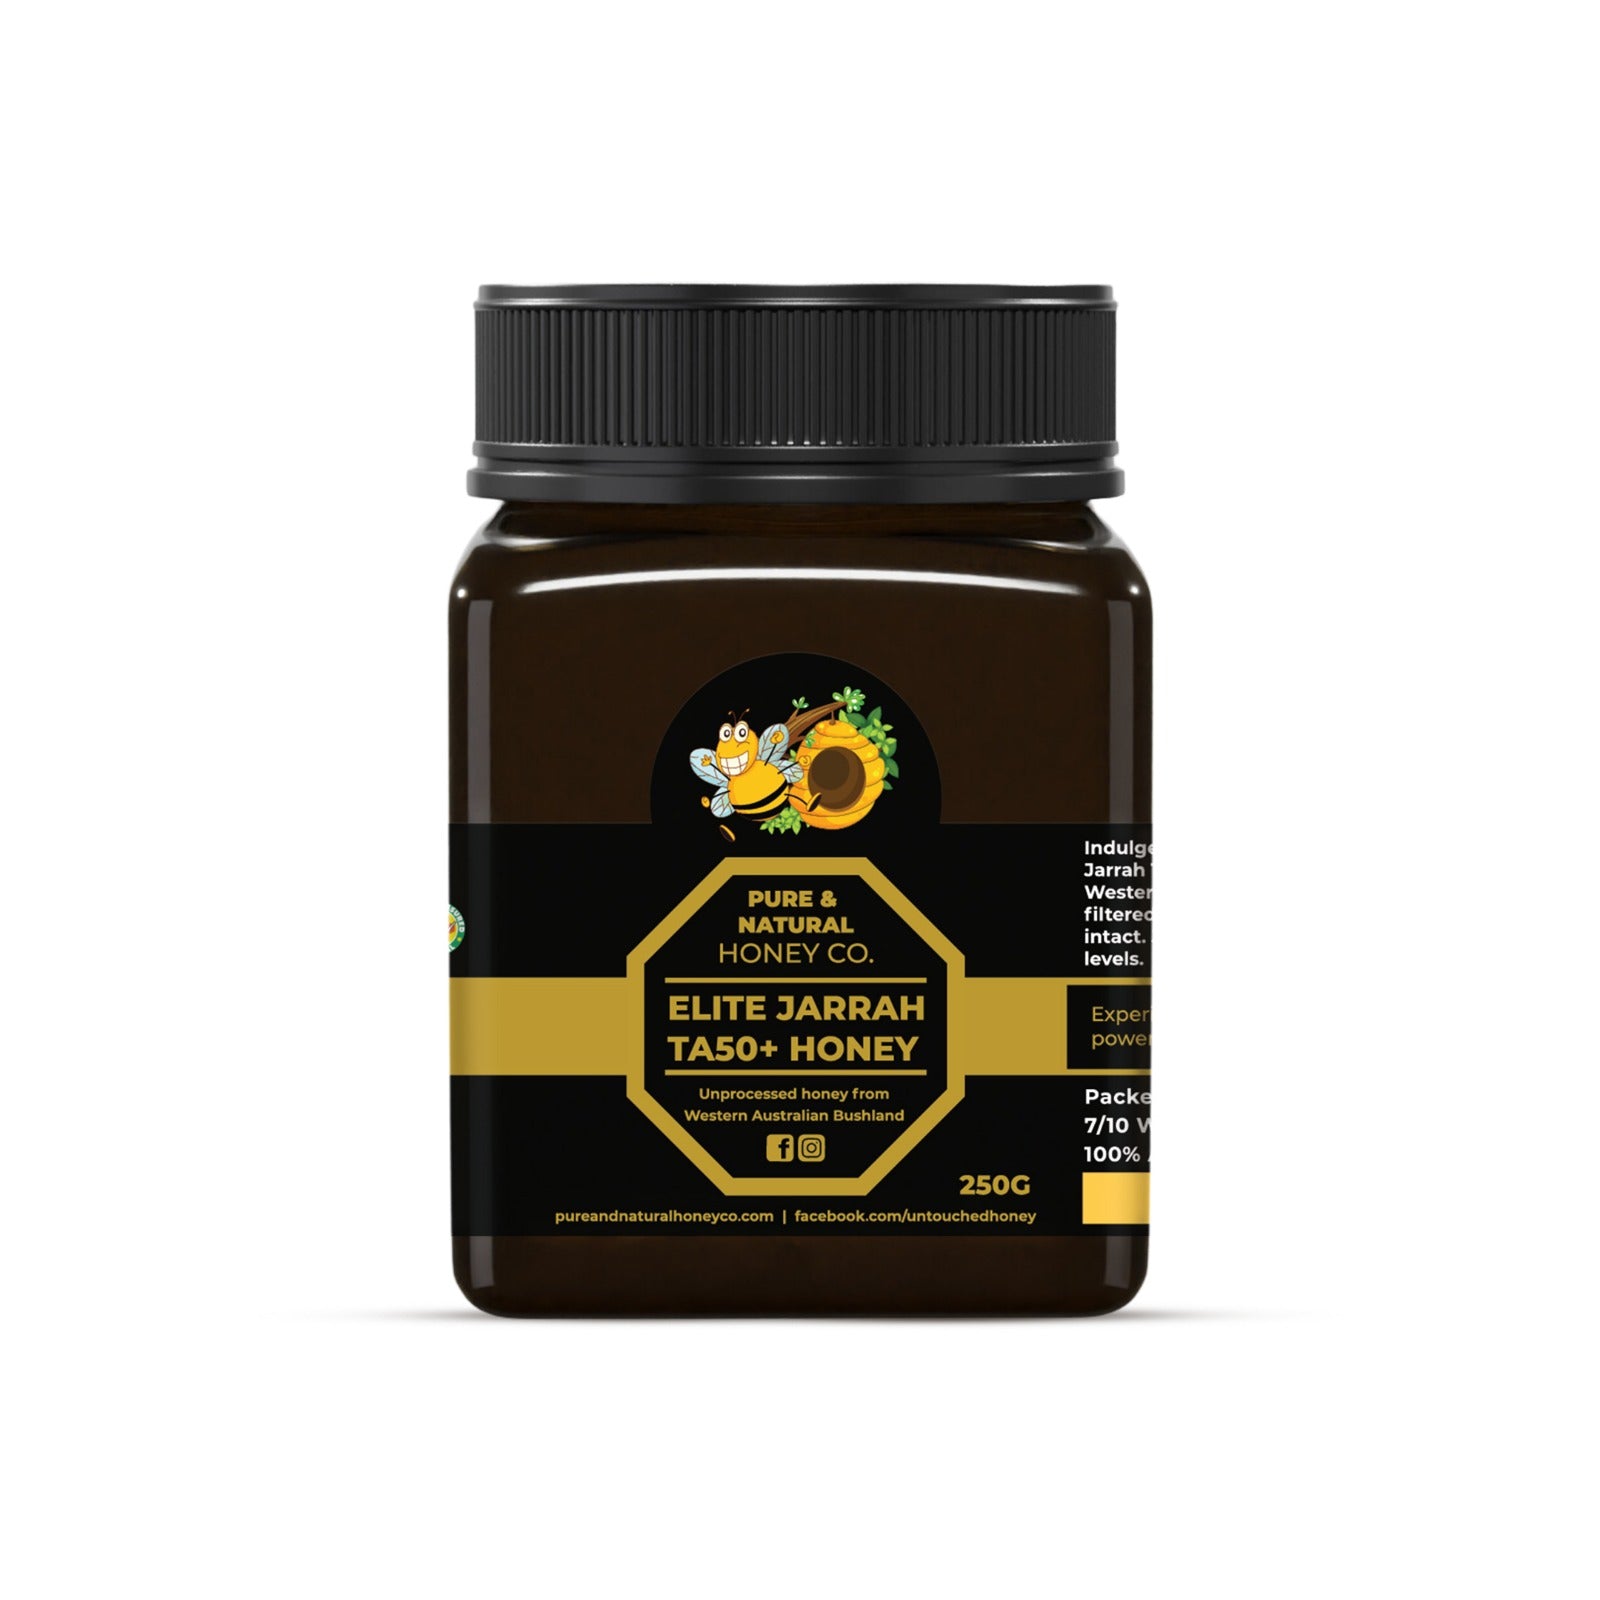 Elite Certified Jarrah Honey TA50+ - Pure & Natural Honey Co